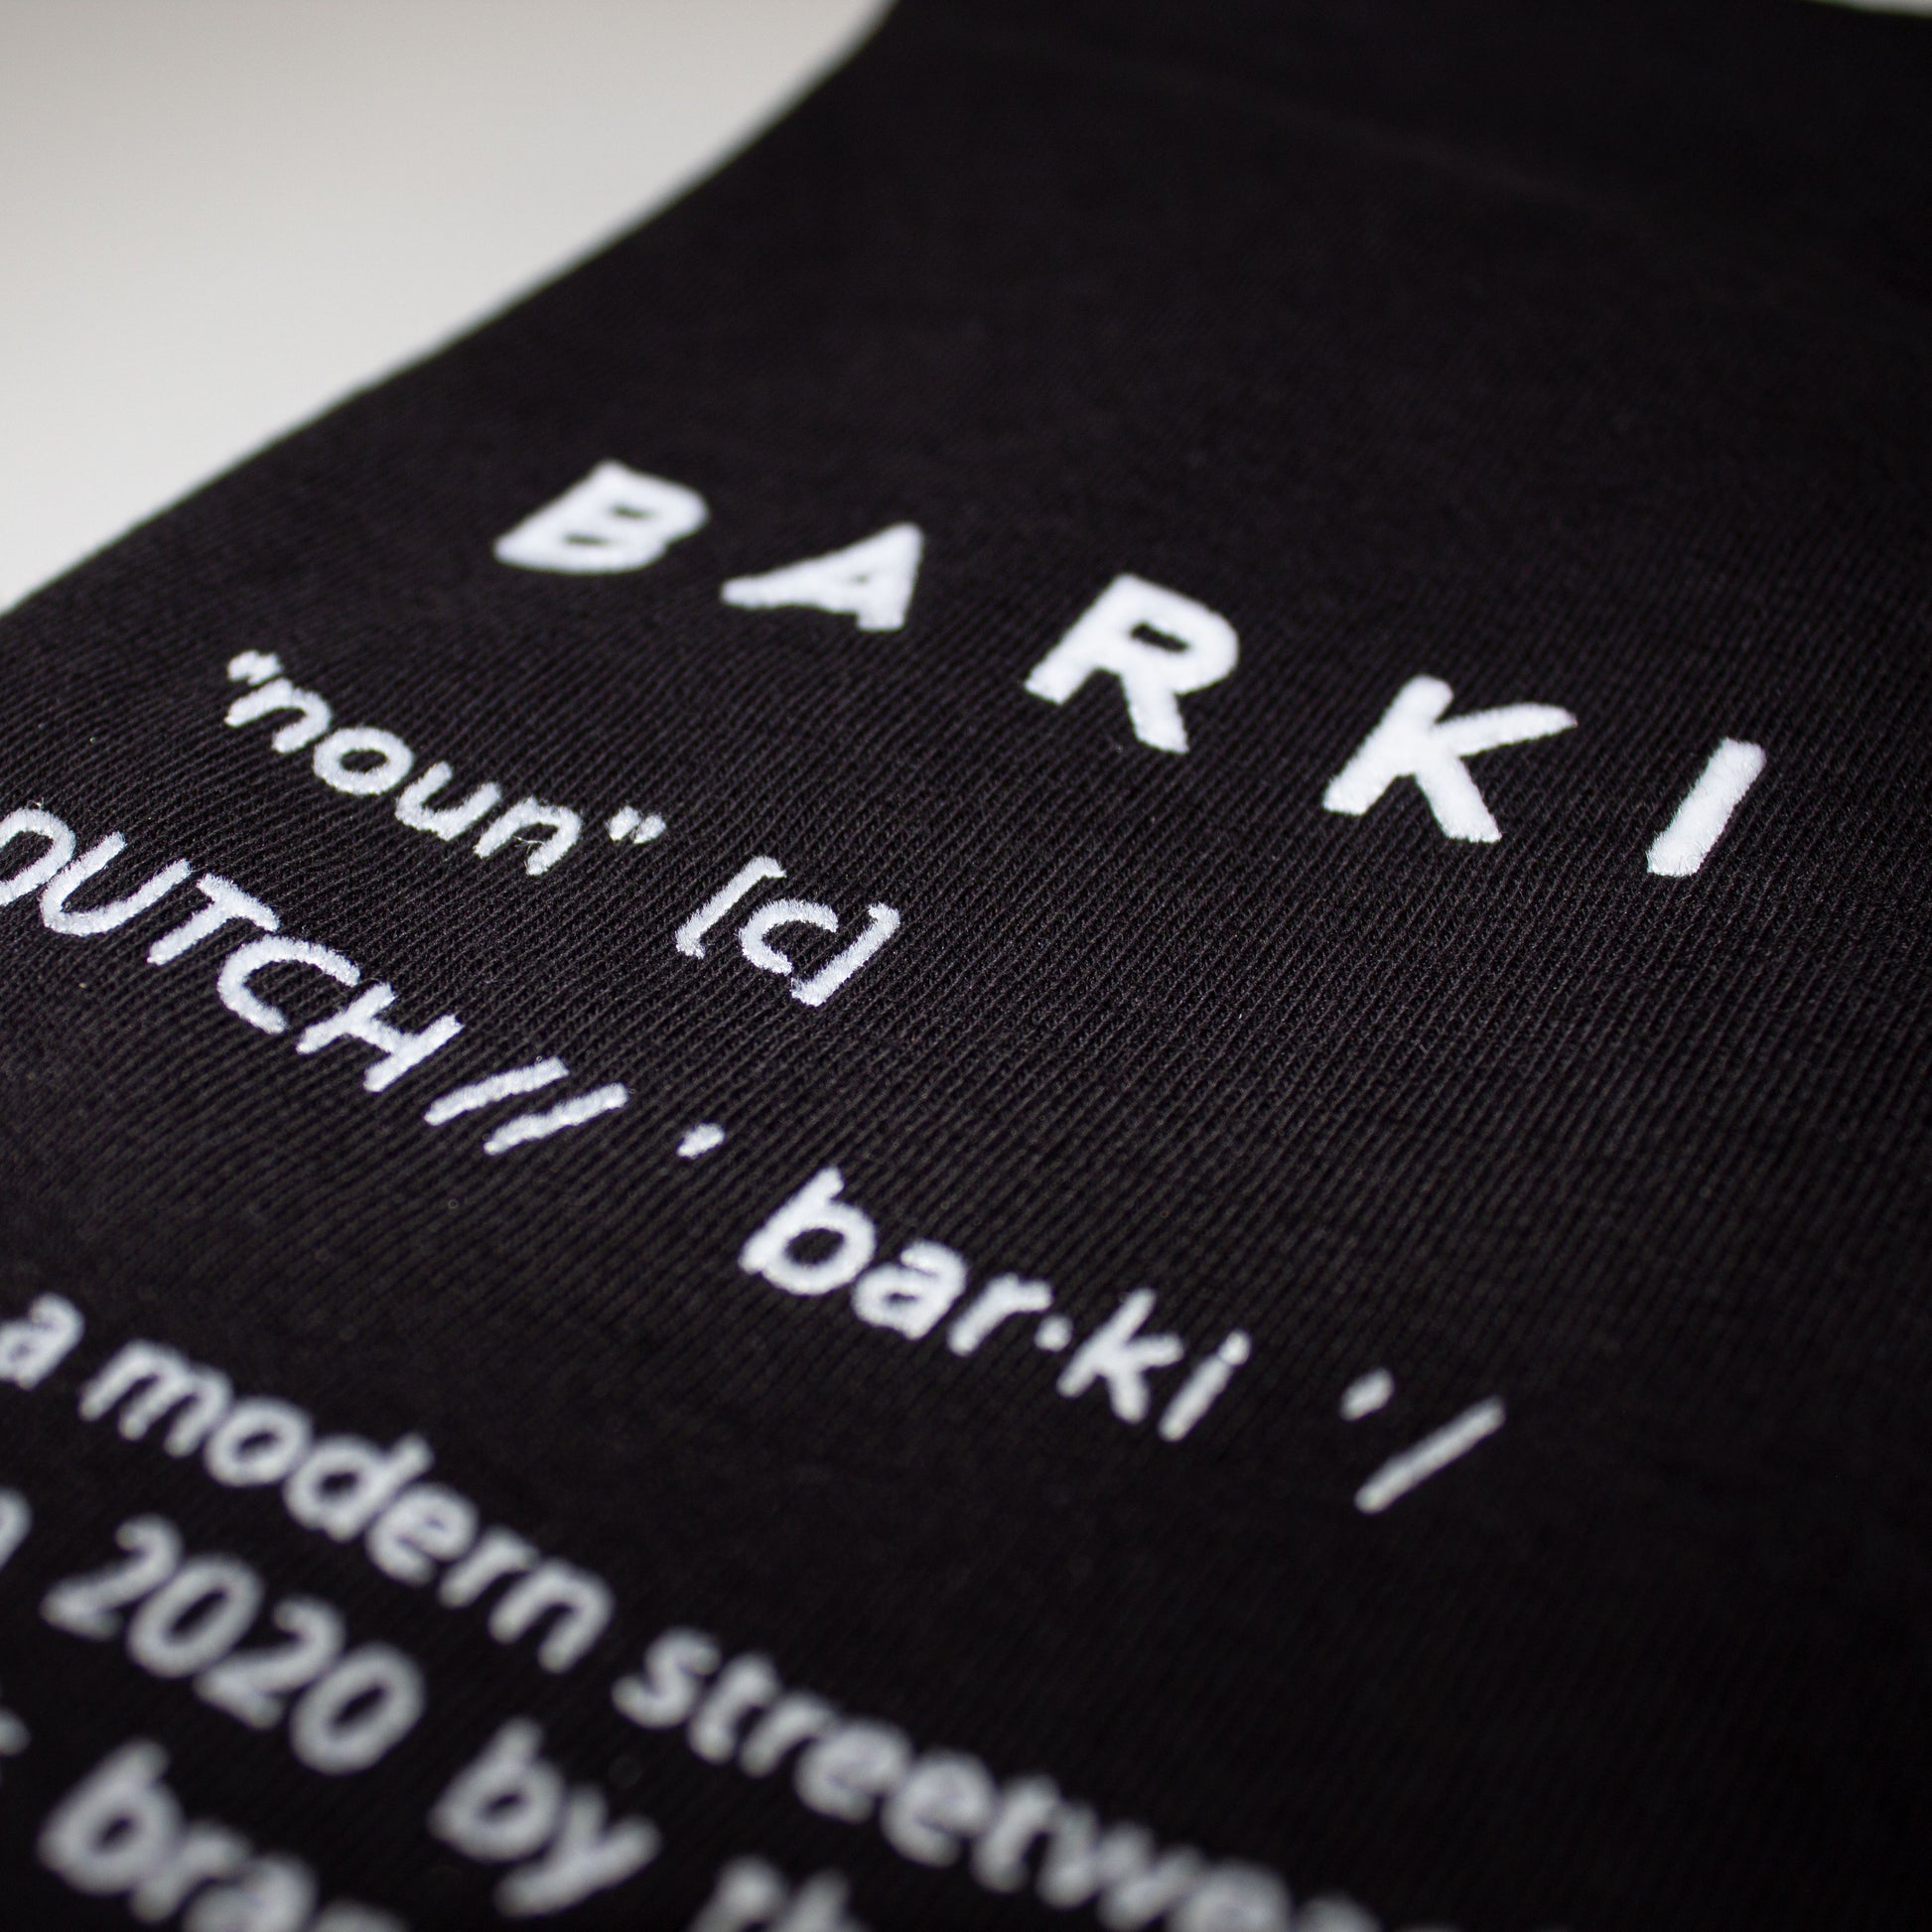 BARKI BARKI T-Shirt - Over sized freeshipping - BARKI T-Shirt 100.00 BARKI